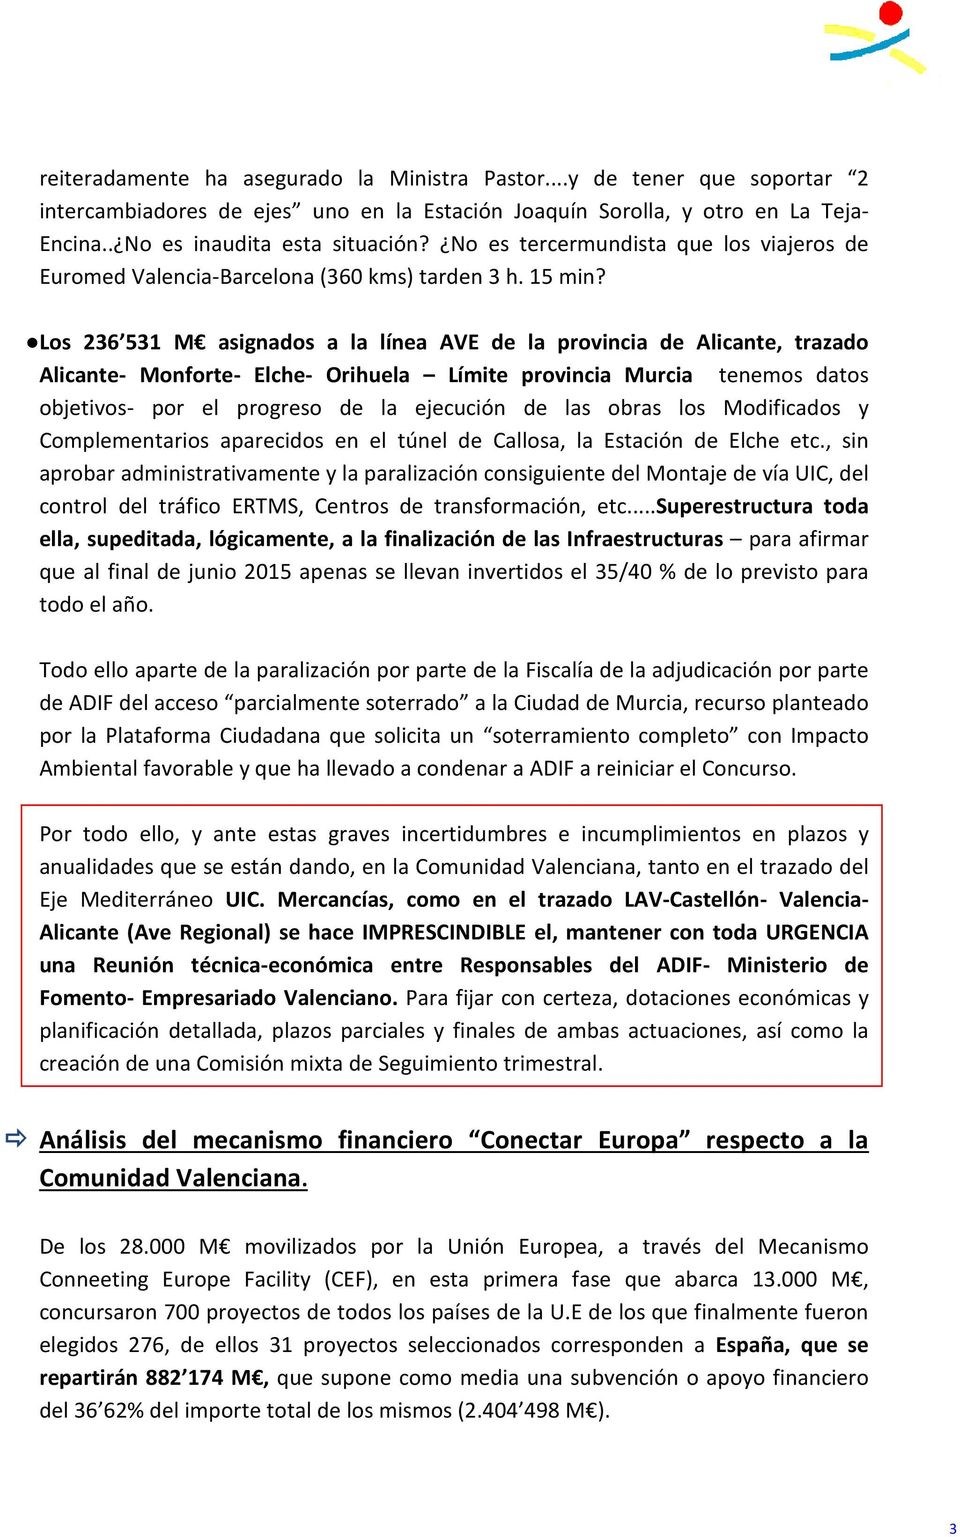 Los 236 531 M asignados a la línea AVE de la provincia de Alicante, trazado Alicante- Monforte- Elche- Orihuela Límite provincia Murcia tenemos datos objetivos- por el progreso de la ejecución de las